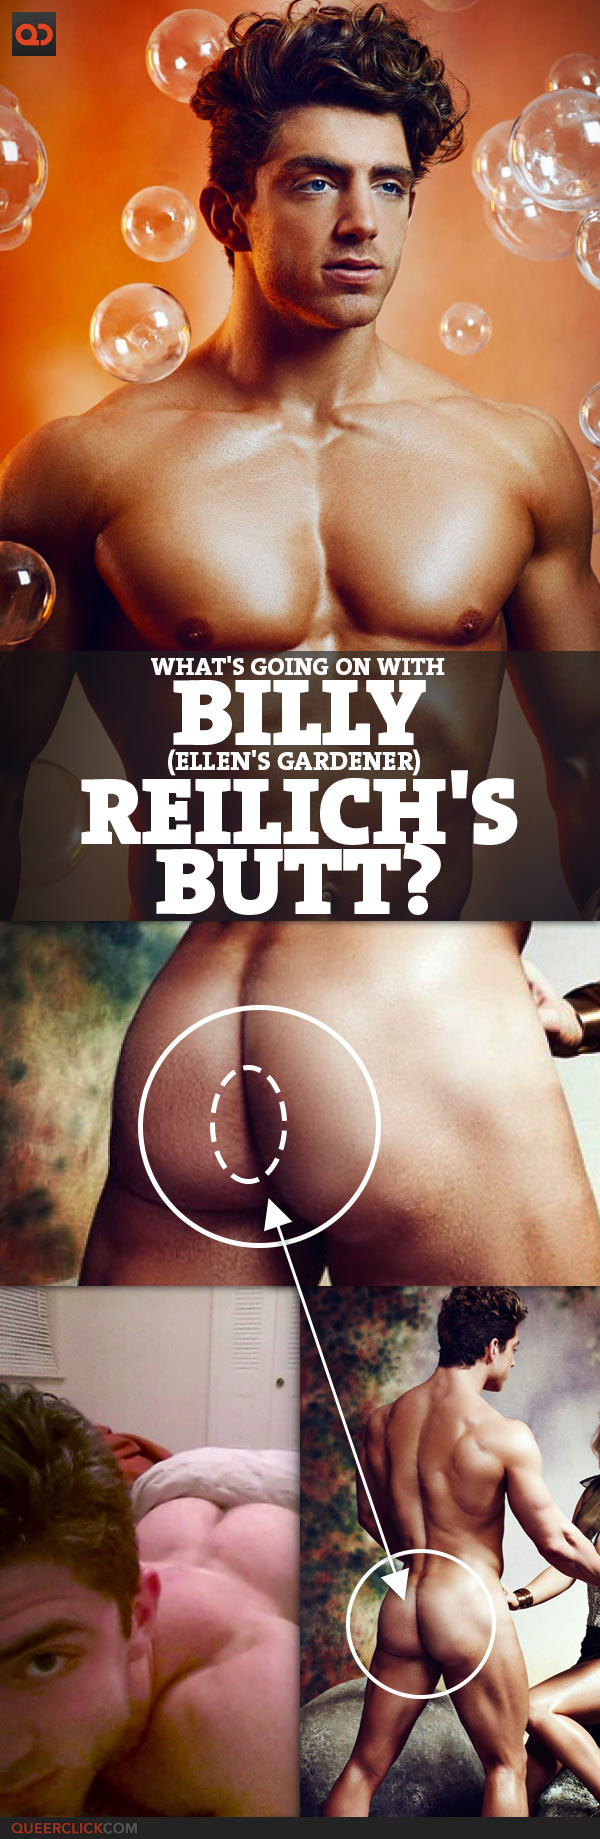 What's Going On With Billy (Ellen's Gardener) Reilich's Butt?